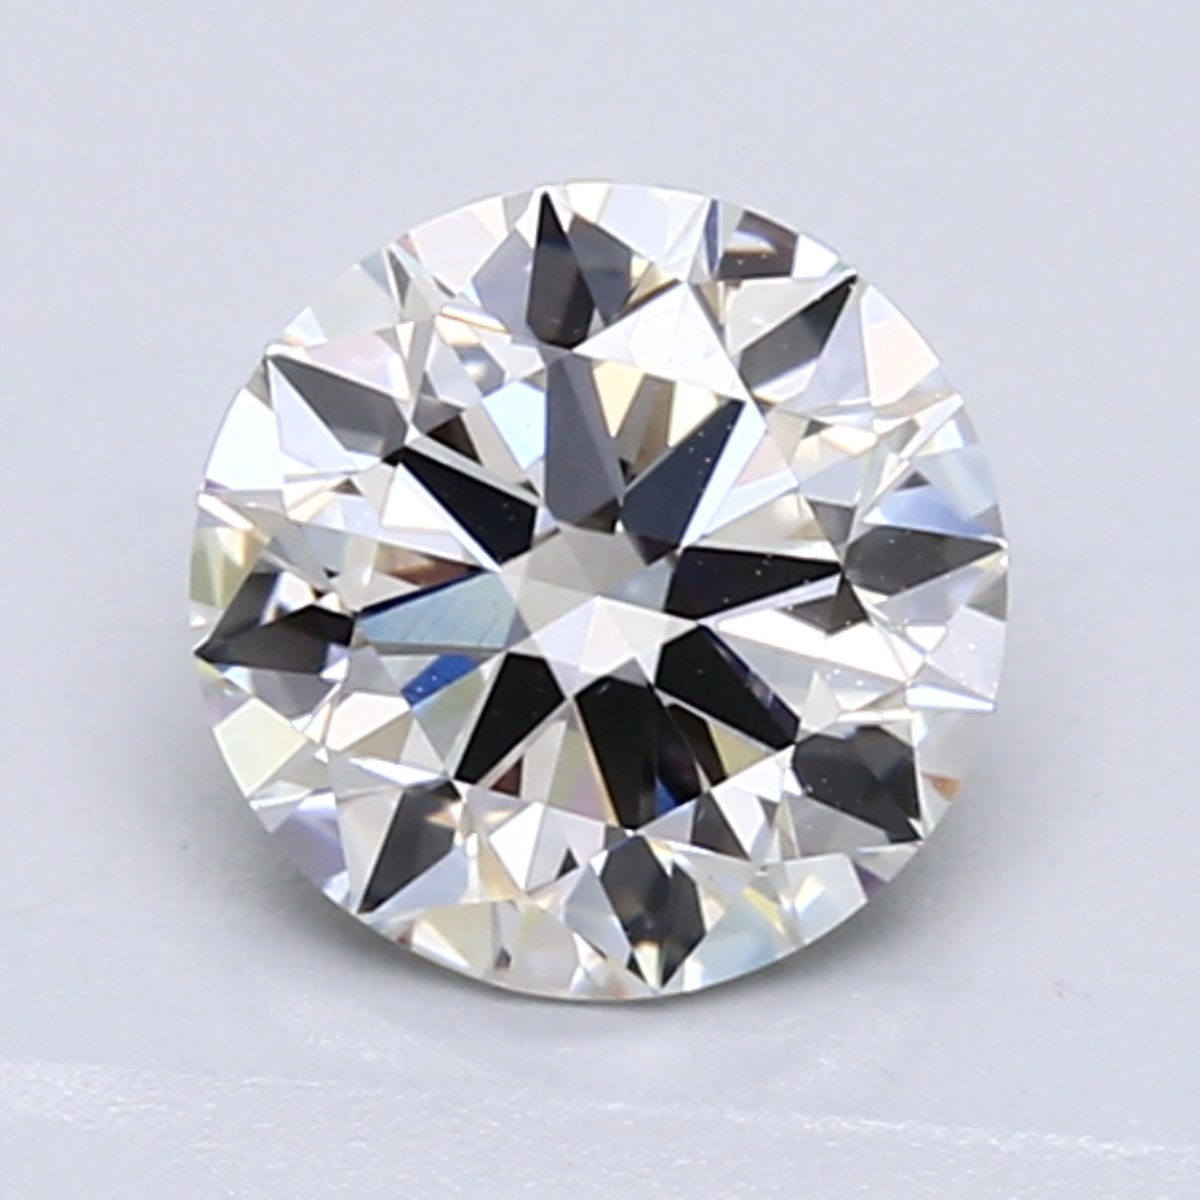 1.5 carat J color diamond